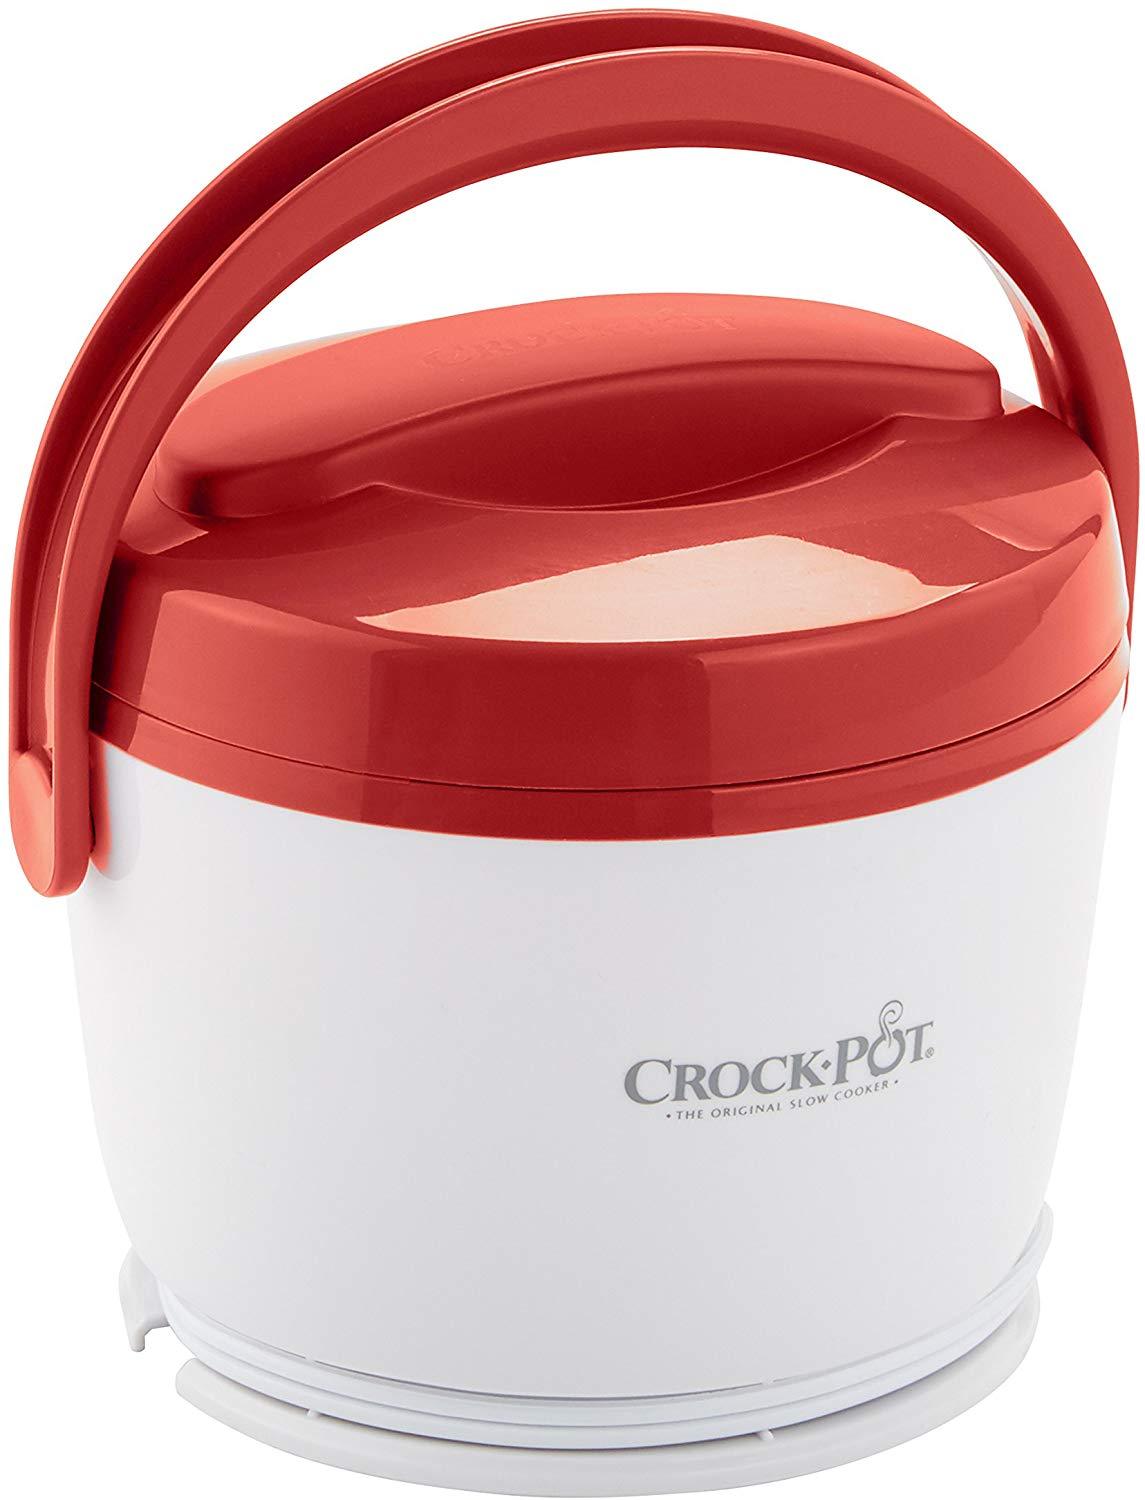 Crock-Pot Slow Cooker Lunch Pot Food Warmer SCCPLC200-BK 20 oz